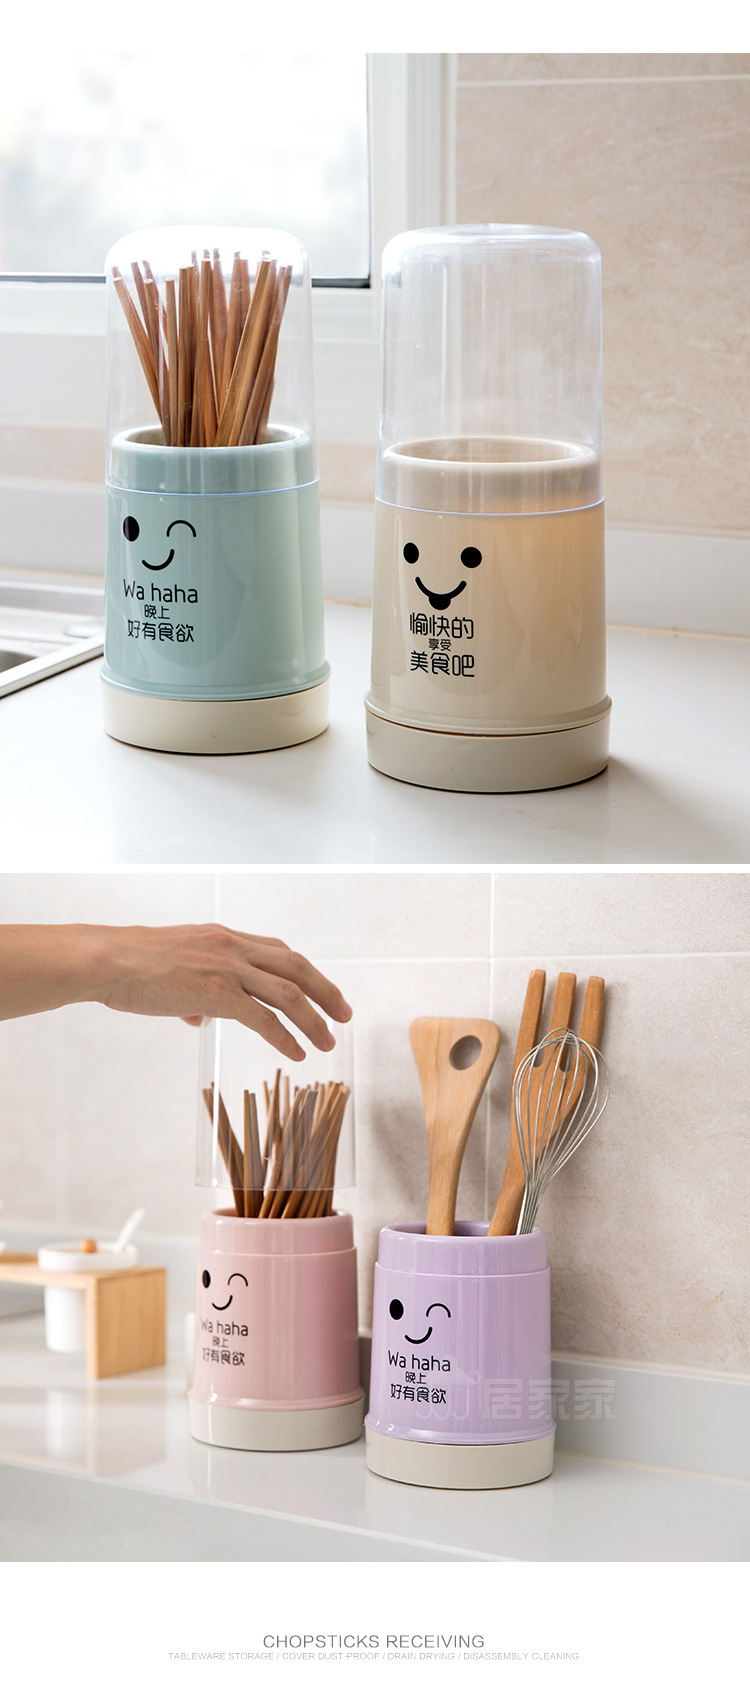 簡約筷子收納桶 廚房必備餐具防塵筷籠 北歐風簡約透明筷桶